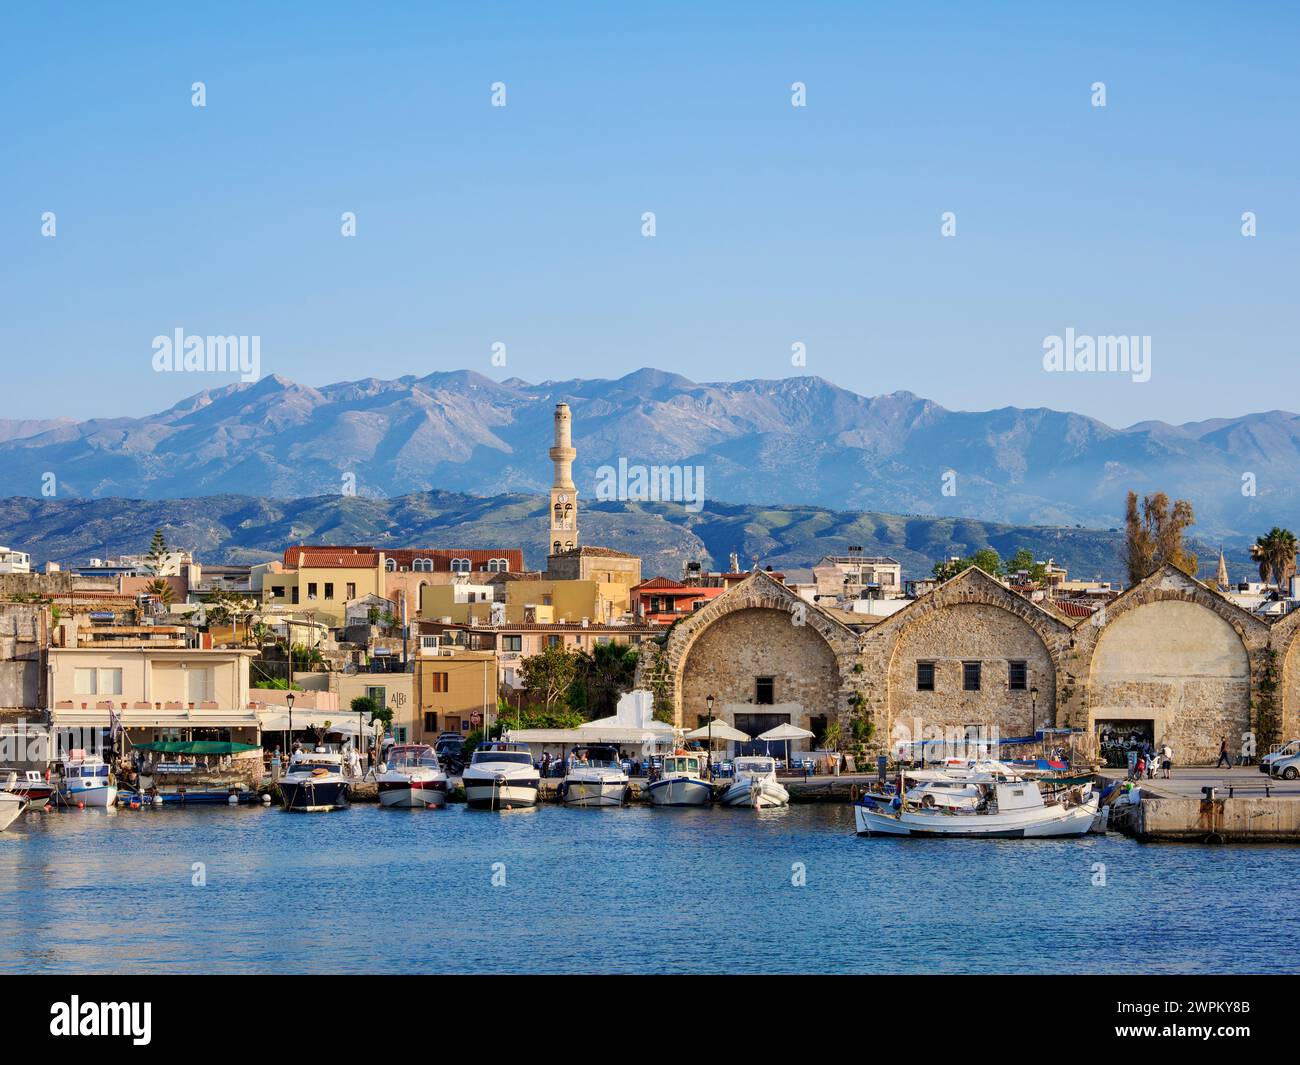 Cantieri navali veneziani, città di Chania, Creta, Isole greche, Grecia, Europa Foto Stock